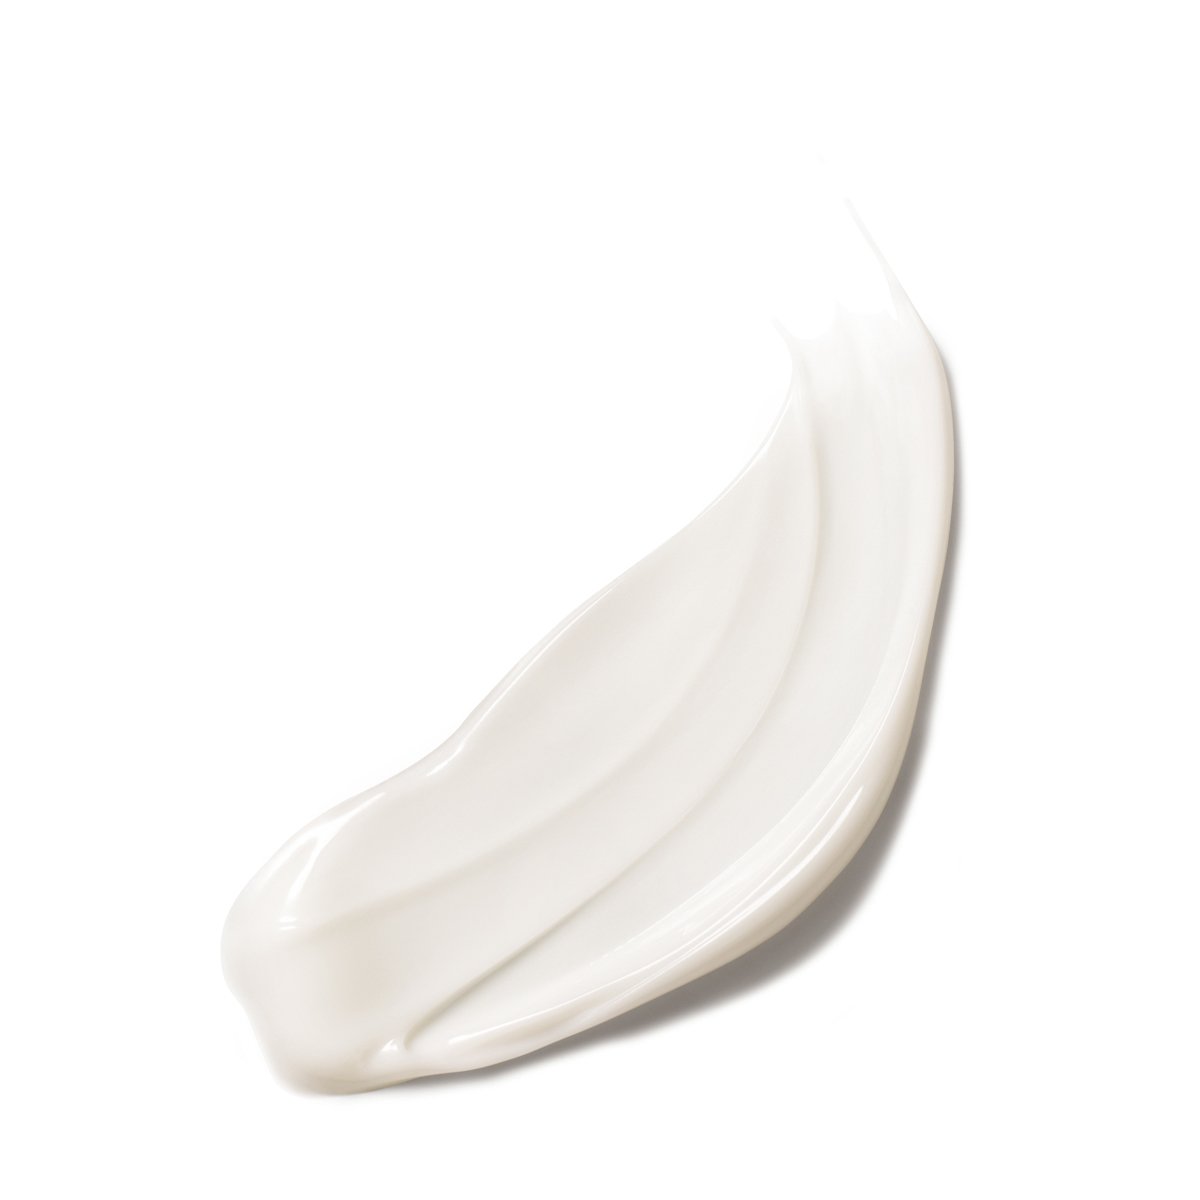 La Roche Posay ProduktSide Nutritic Intense Cream Texture